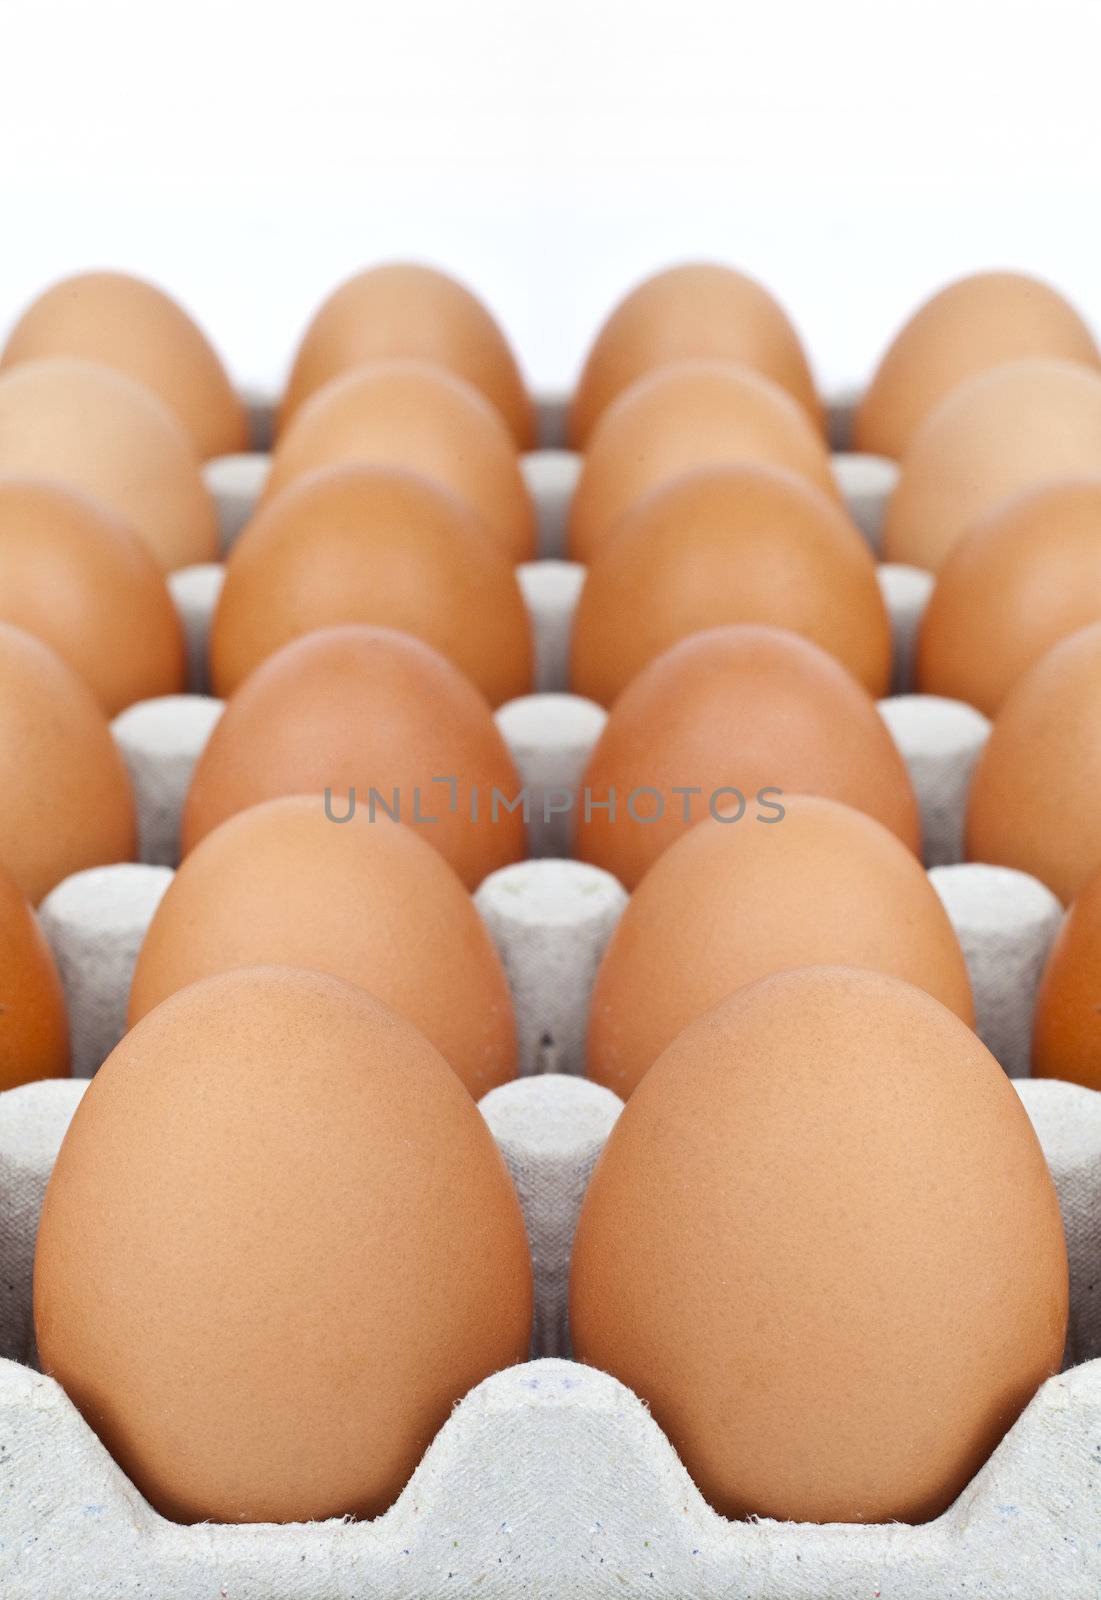 Carton of Eggs by chrisdorney